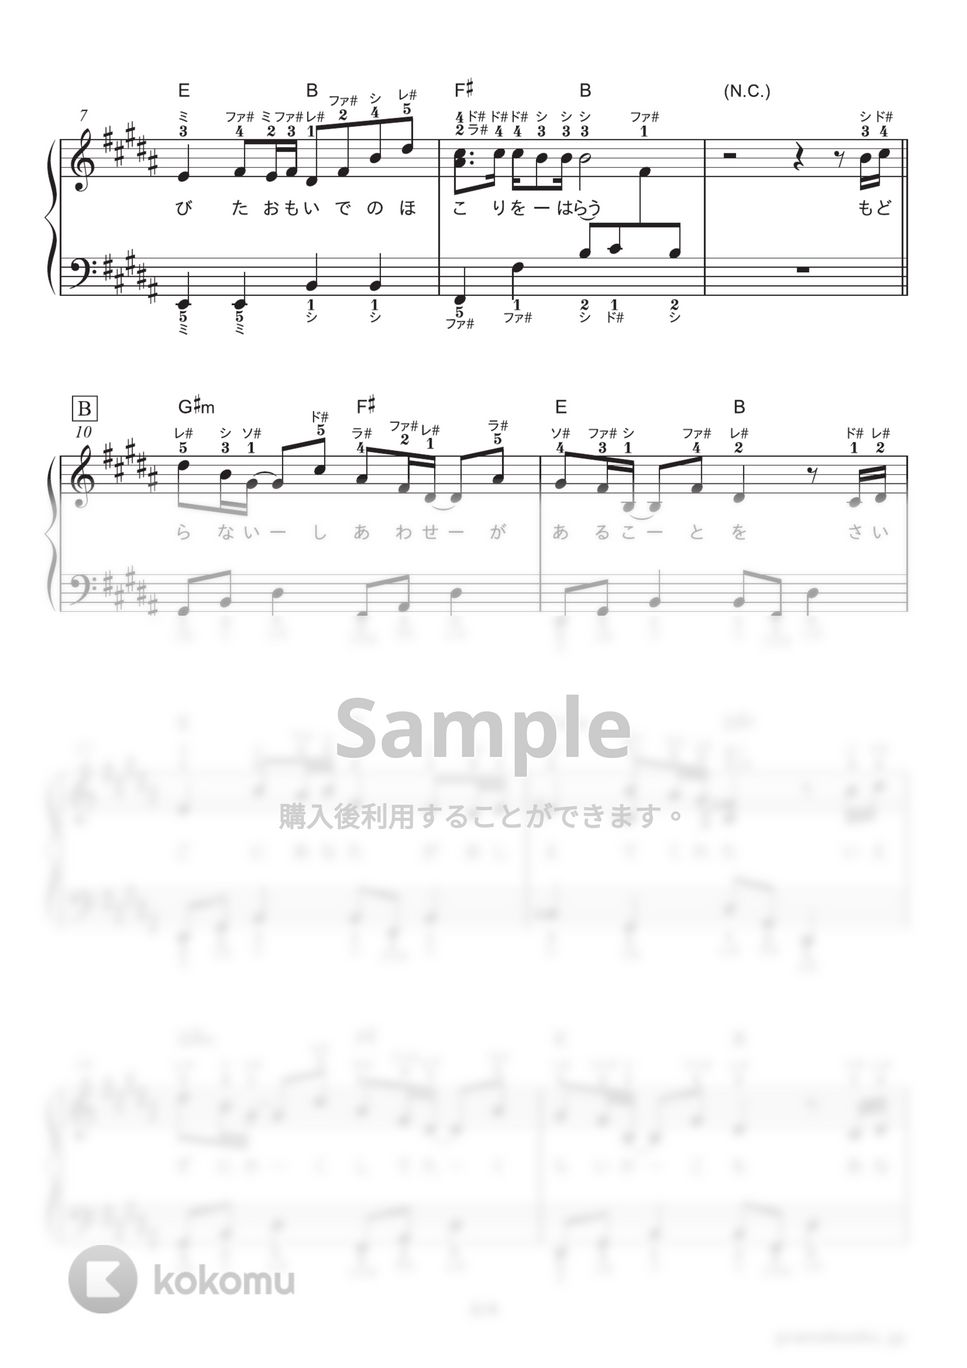 米津玄師 - Lemon (ドラマ『アンナチュラル』主題歌) by ピアノの本棚